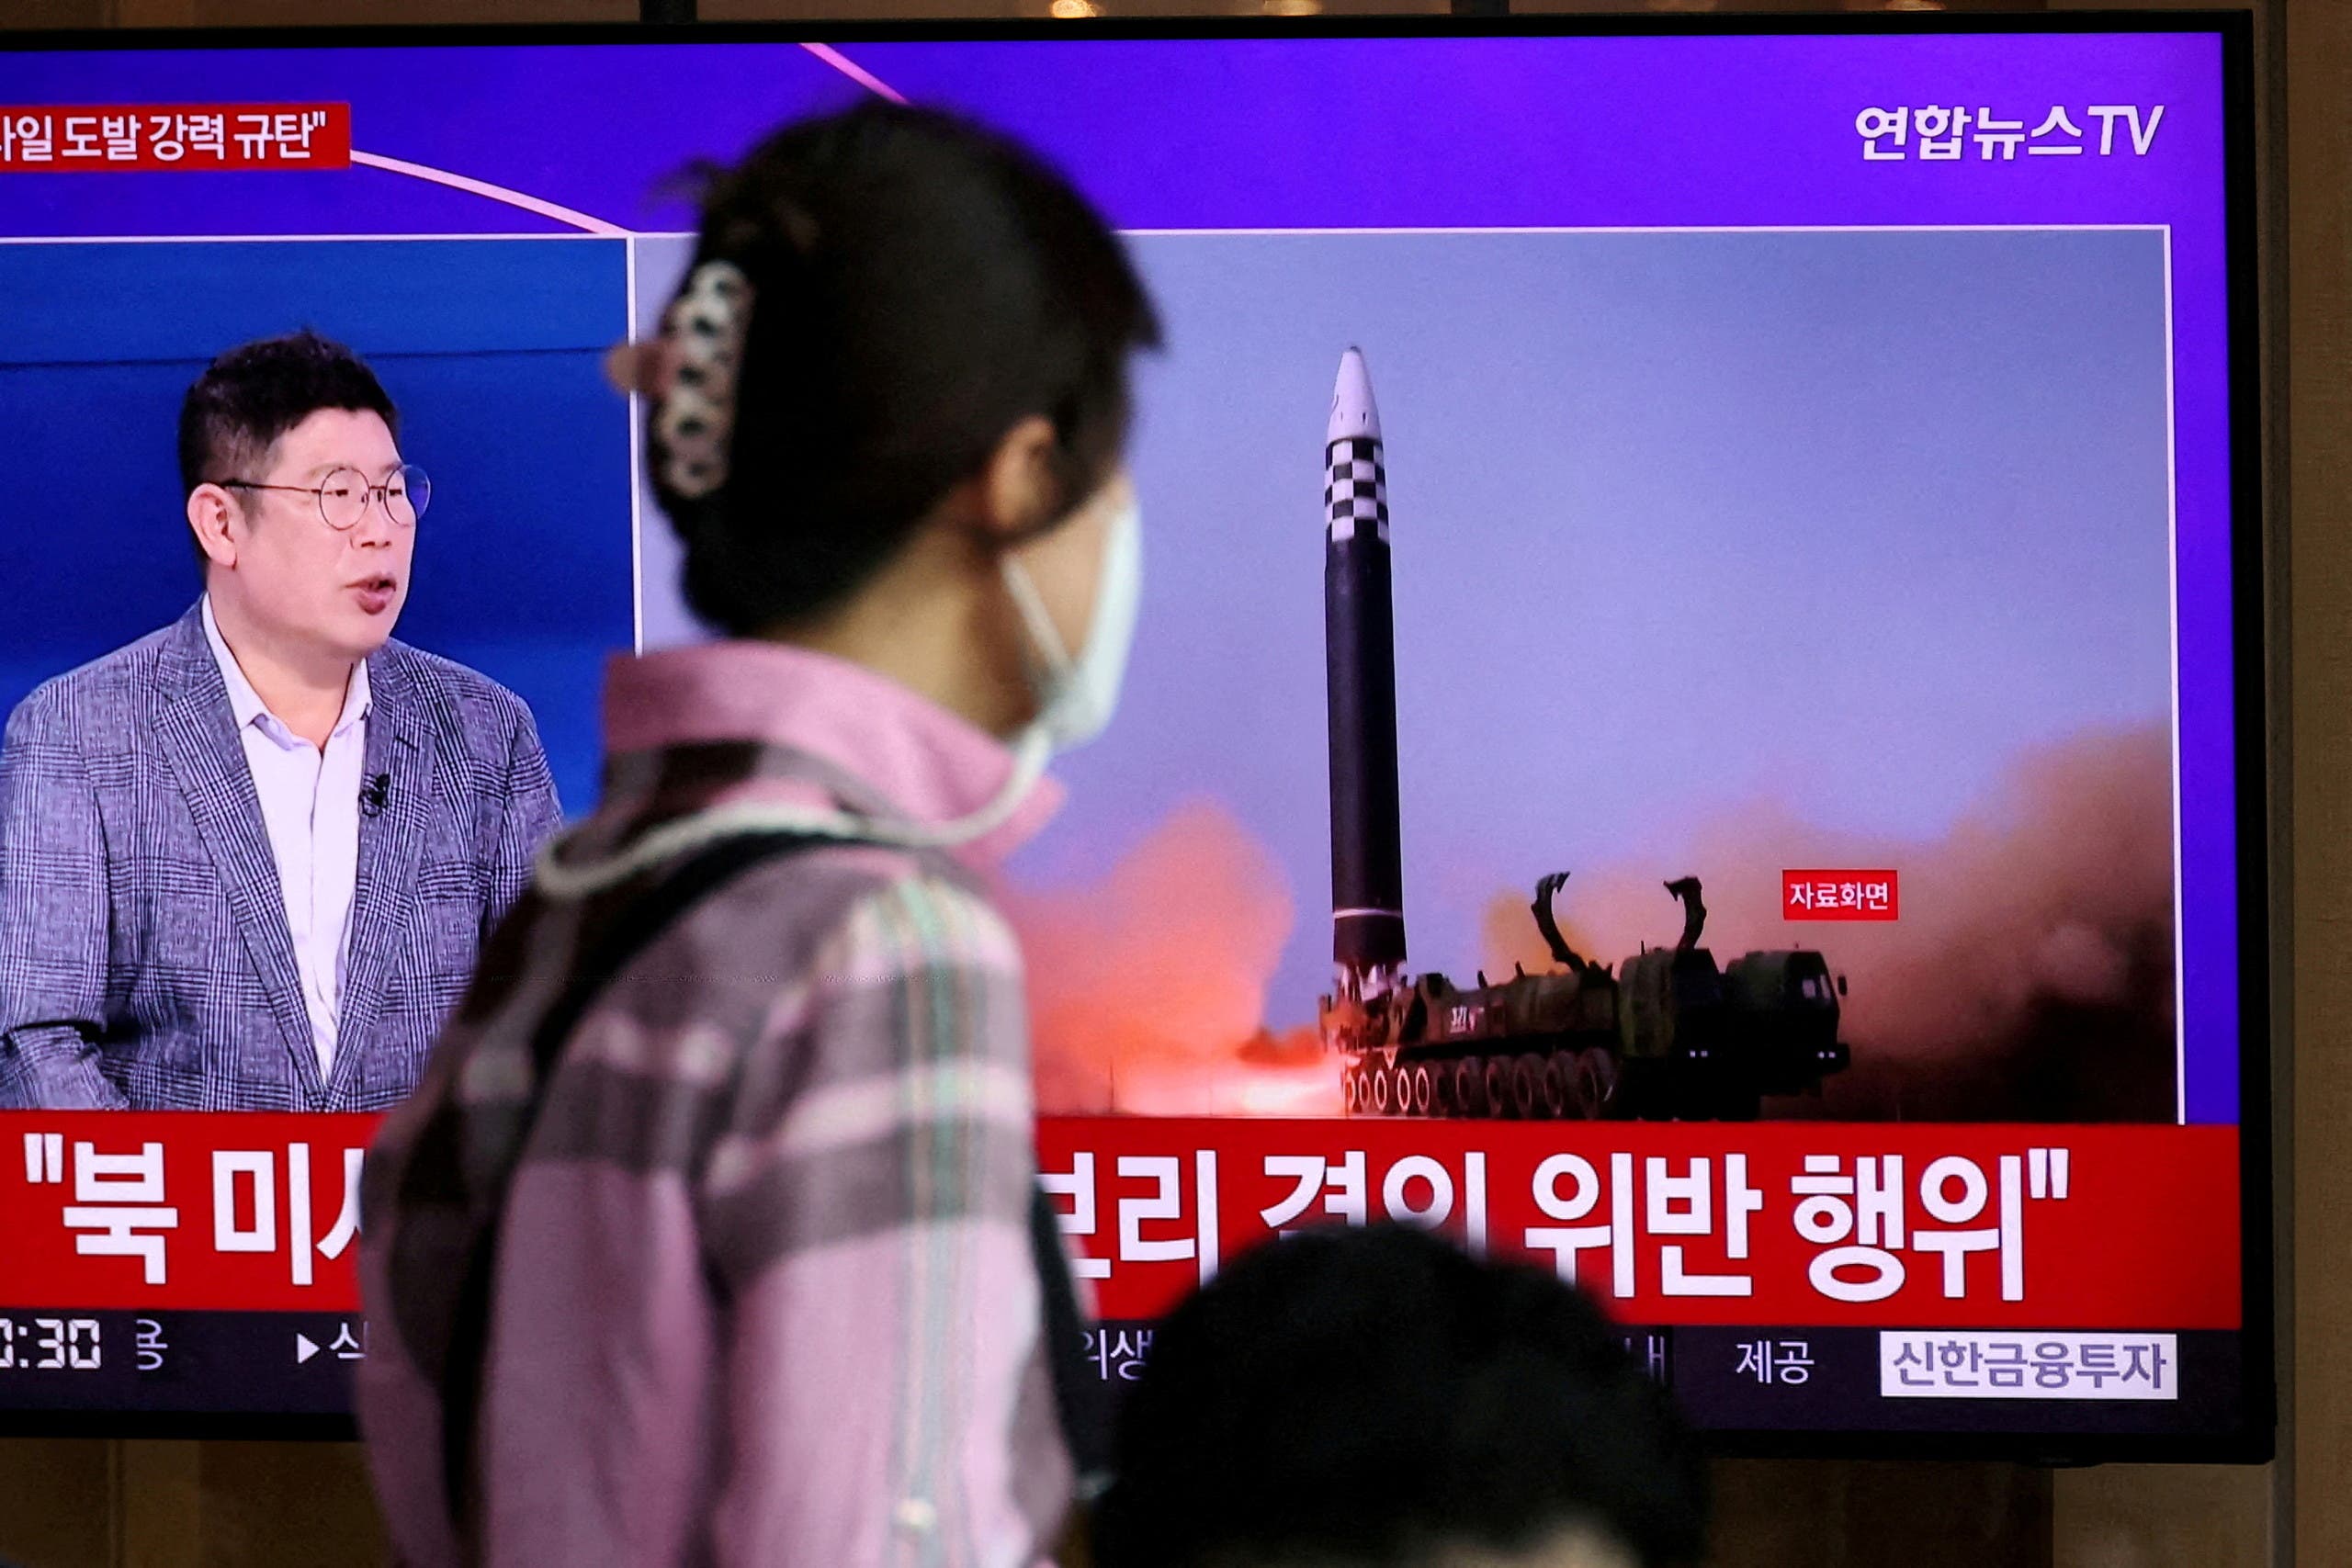 شاشة تلفزيون في سيول تبث تجربة صاروخية أجرتها كوريا الشمالية في مايو الماضي